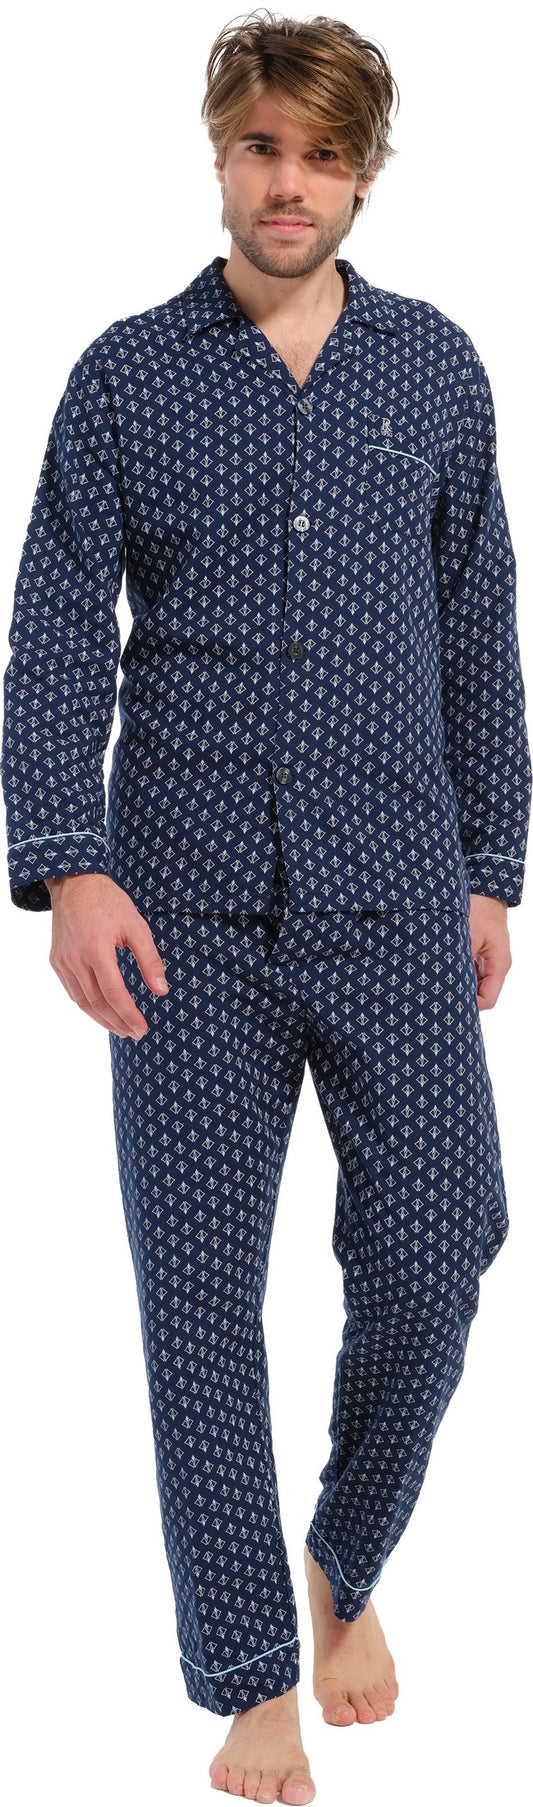 Pyjama 27232-710-6 526 blauw